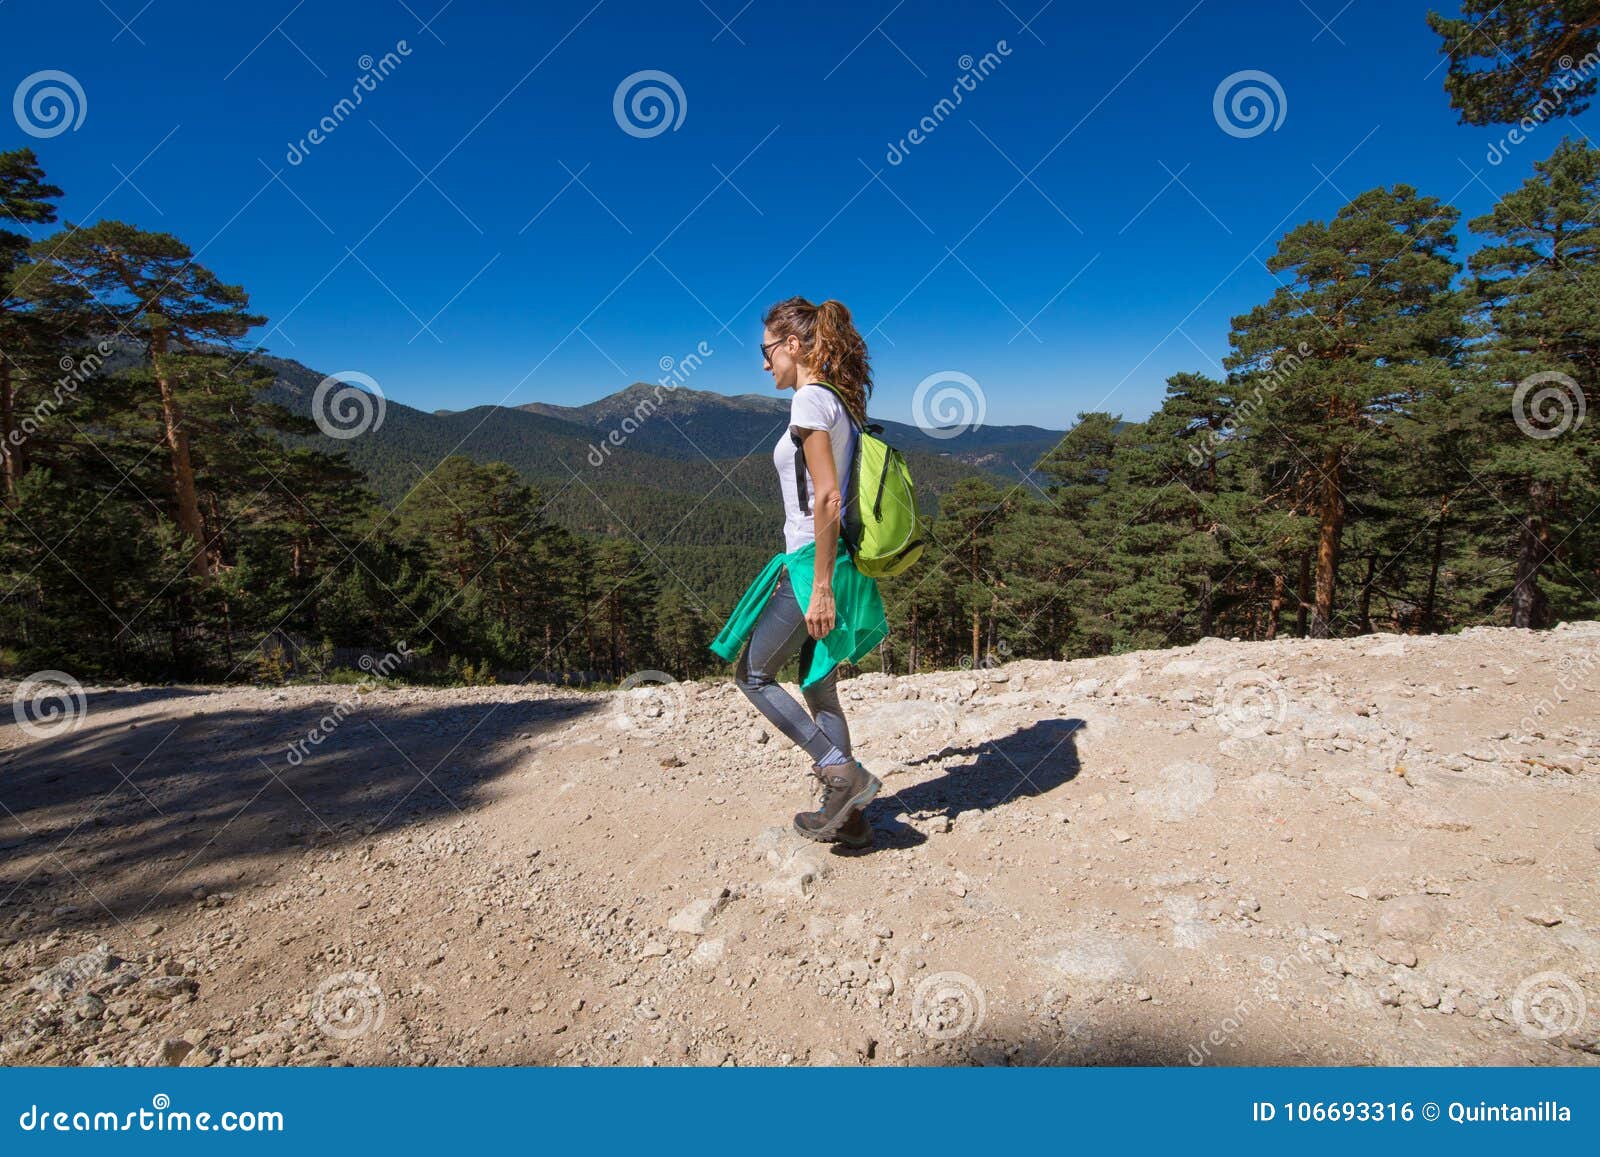 woman hiking in guadarrama mountain